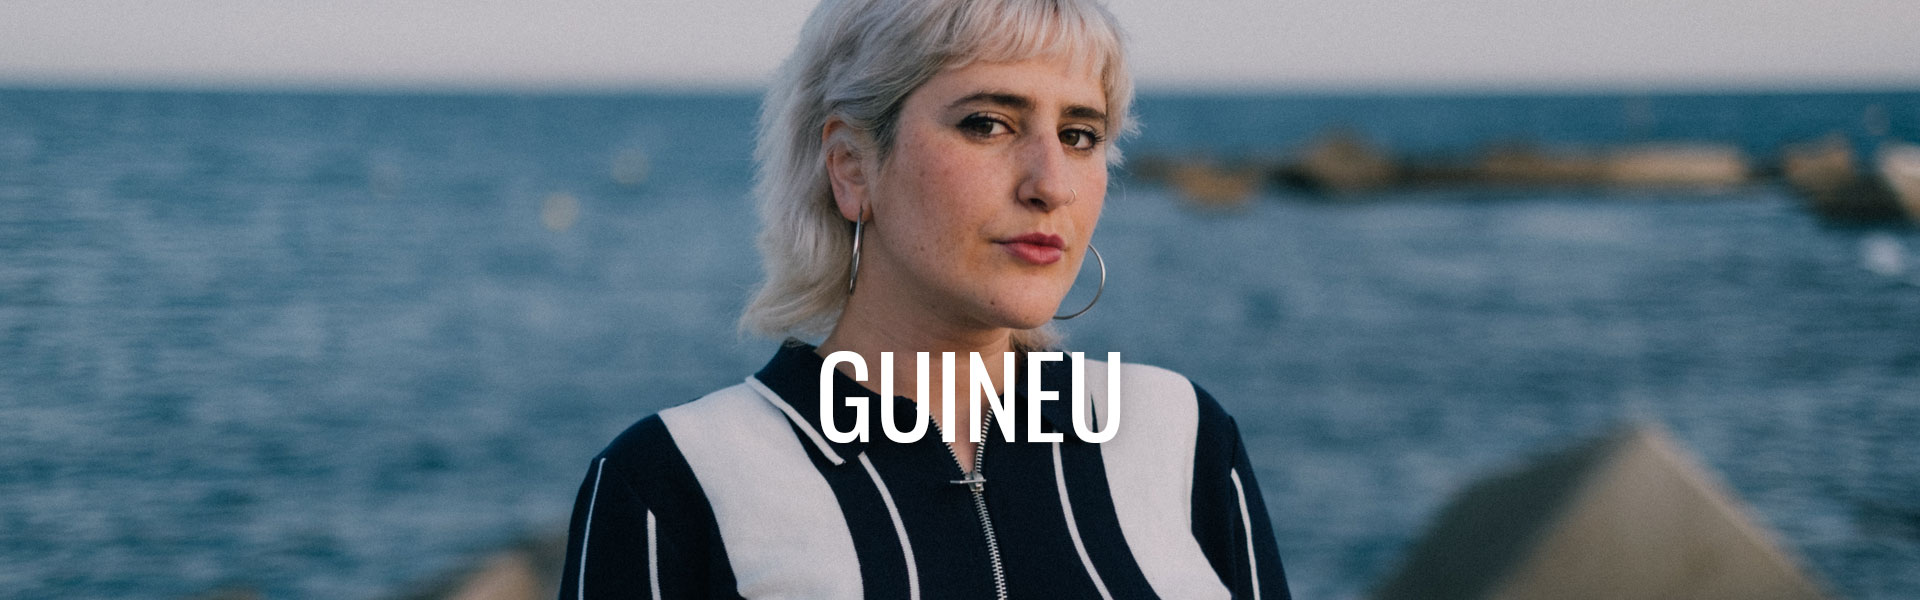 03-GUINEU